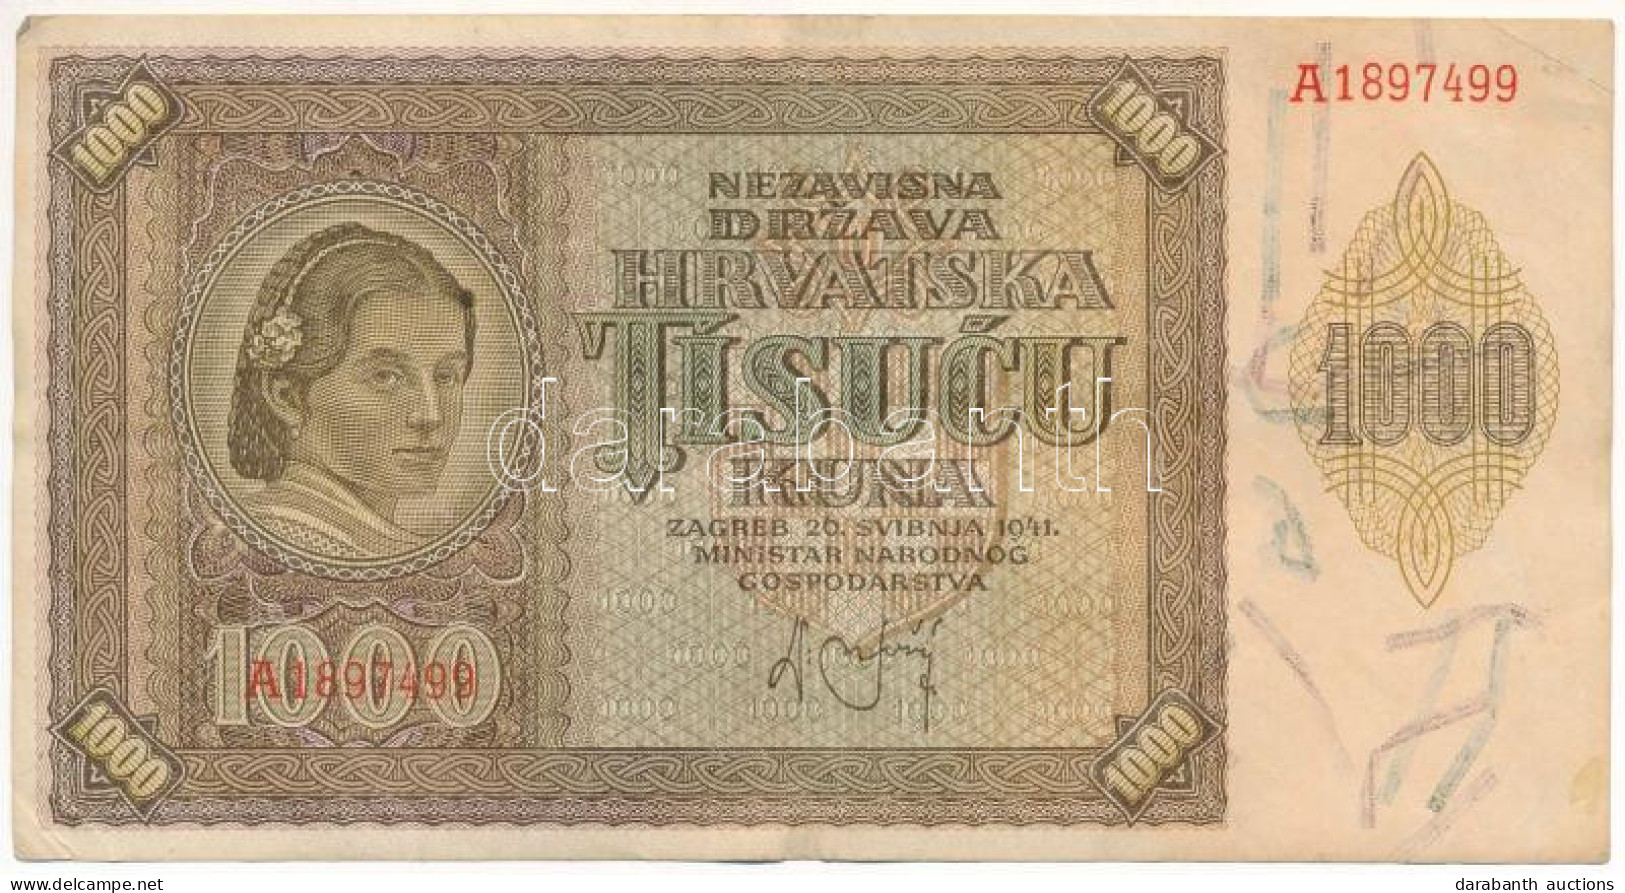 Horvátország / Független Horvát Állam 1941. 1000K "A" T:F Szép Papír Independent State Of Croatia 1941. 1000 Kuna "A" C: - Non Classés